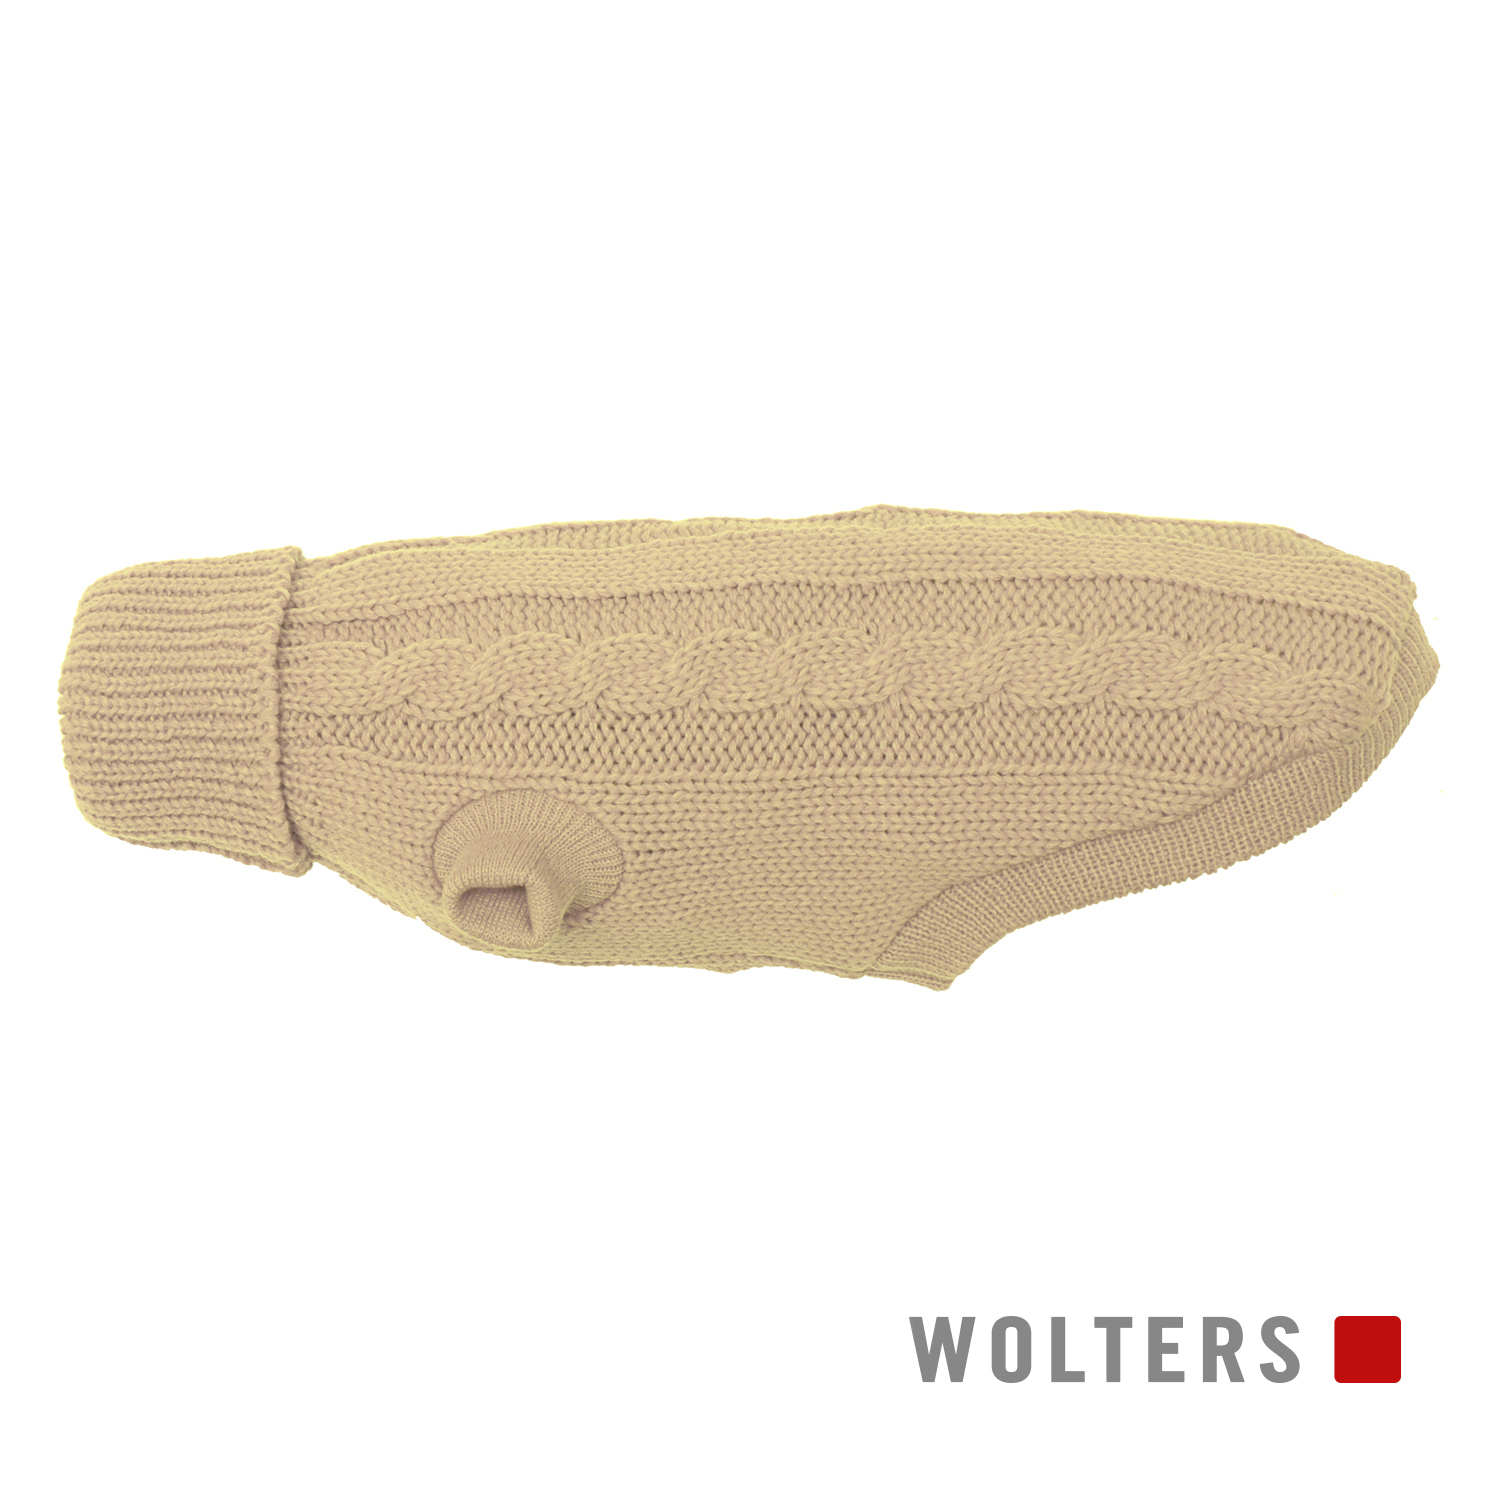 Wolters Zopf-Strickpullover Beige 30 cm